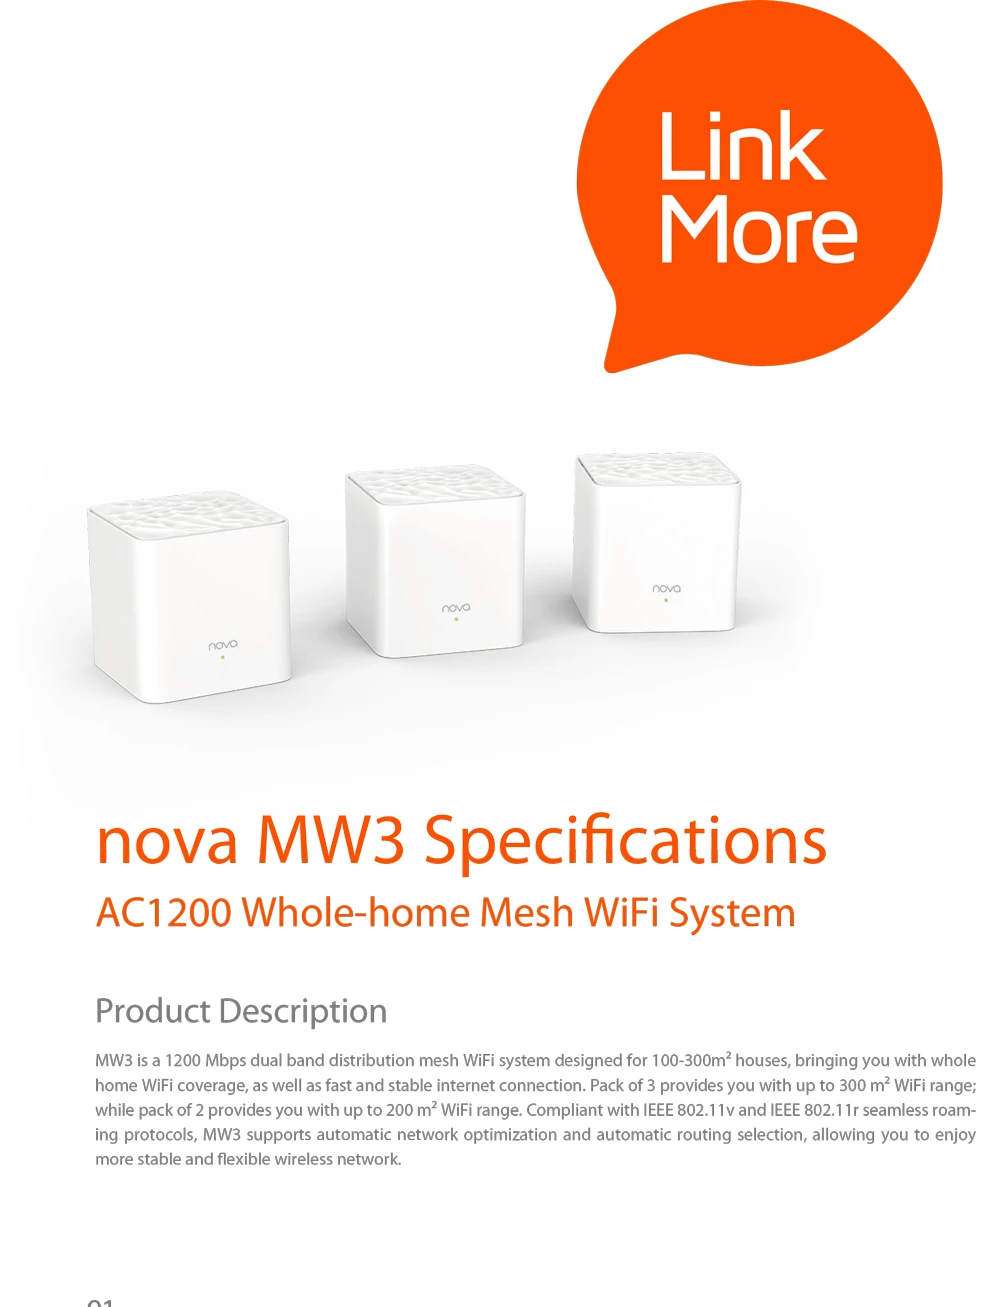 Tenda Nova MW3 весь дом сетки гигабитный Wi-Fi Системы с AC1200 2,4G/5,0 ГГц Wi-Fi Беспроводной маршрутизатор и ретранслятор, приложение дистанционное управление